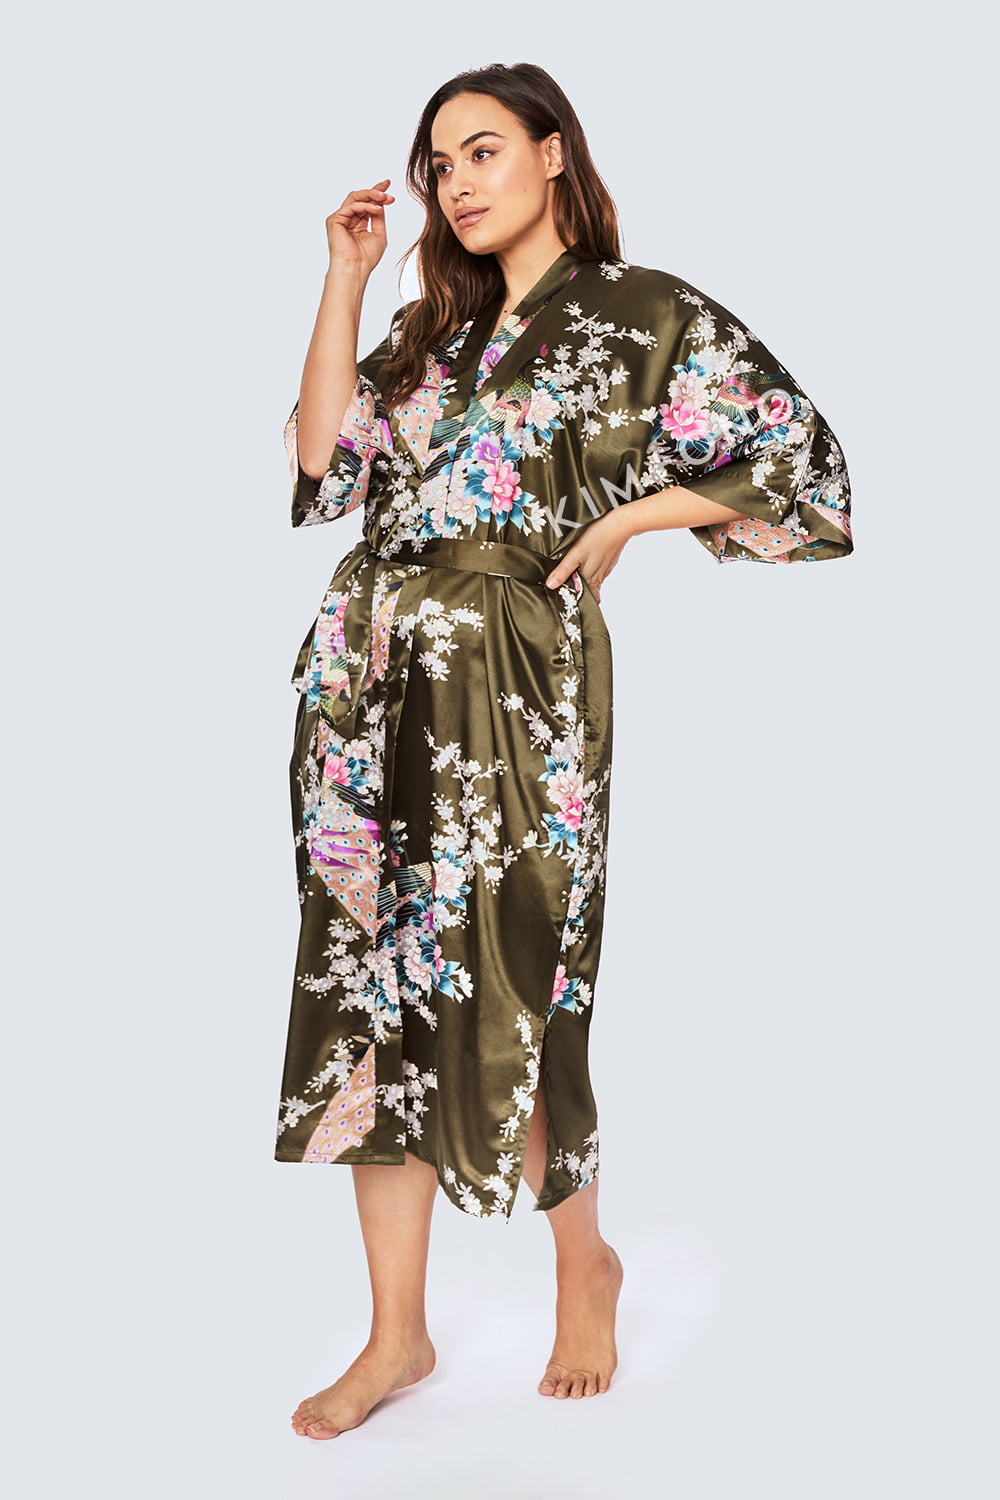 KIM+ONO Plus Size Women's Satin Kimono Robe Long Floral 